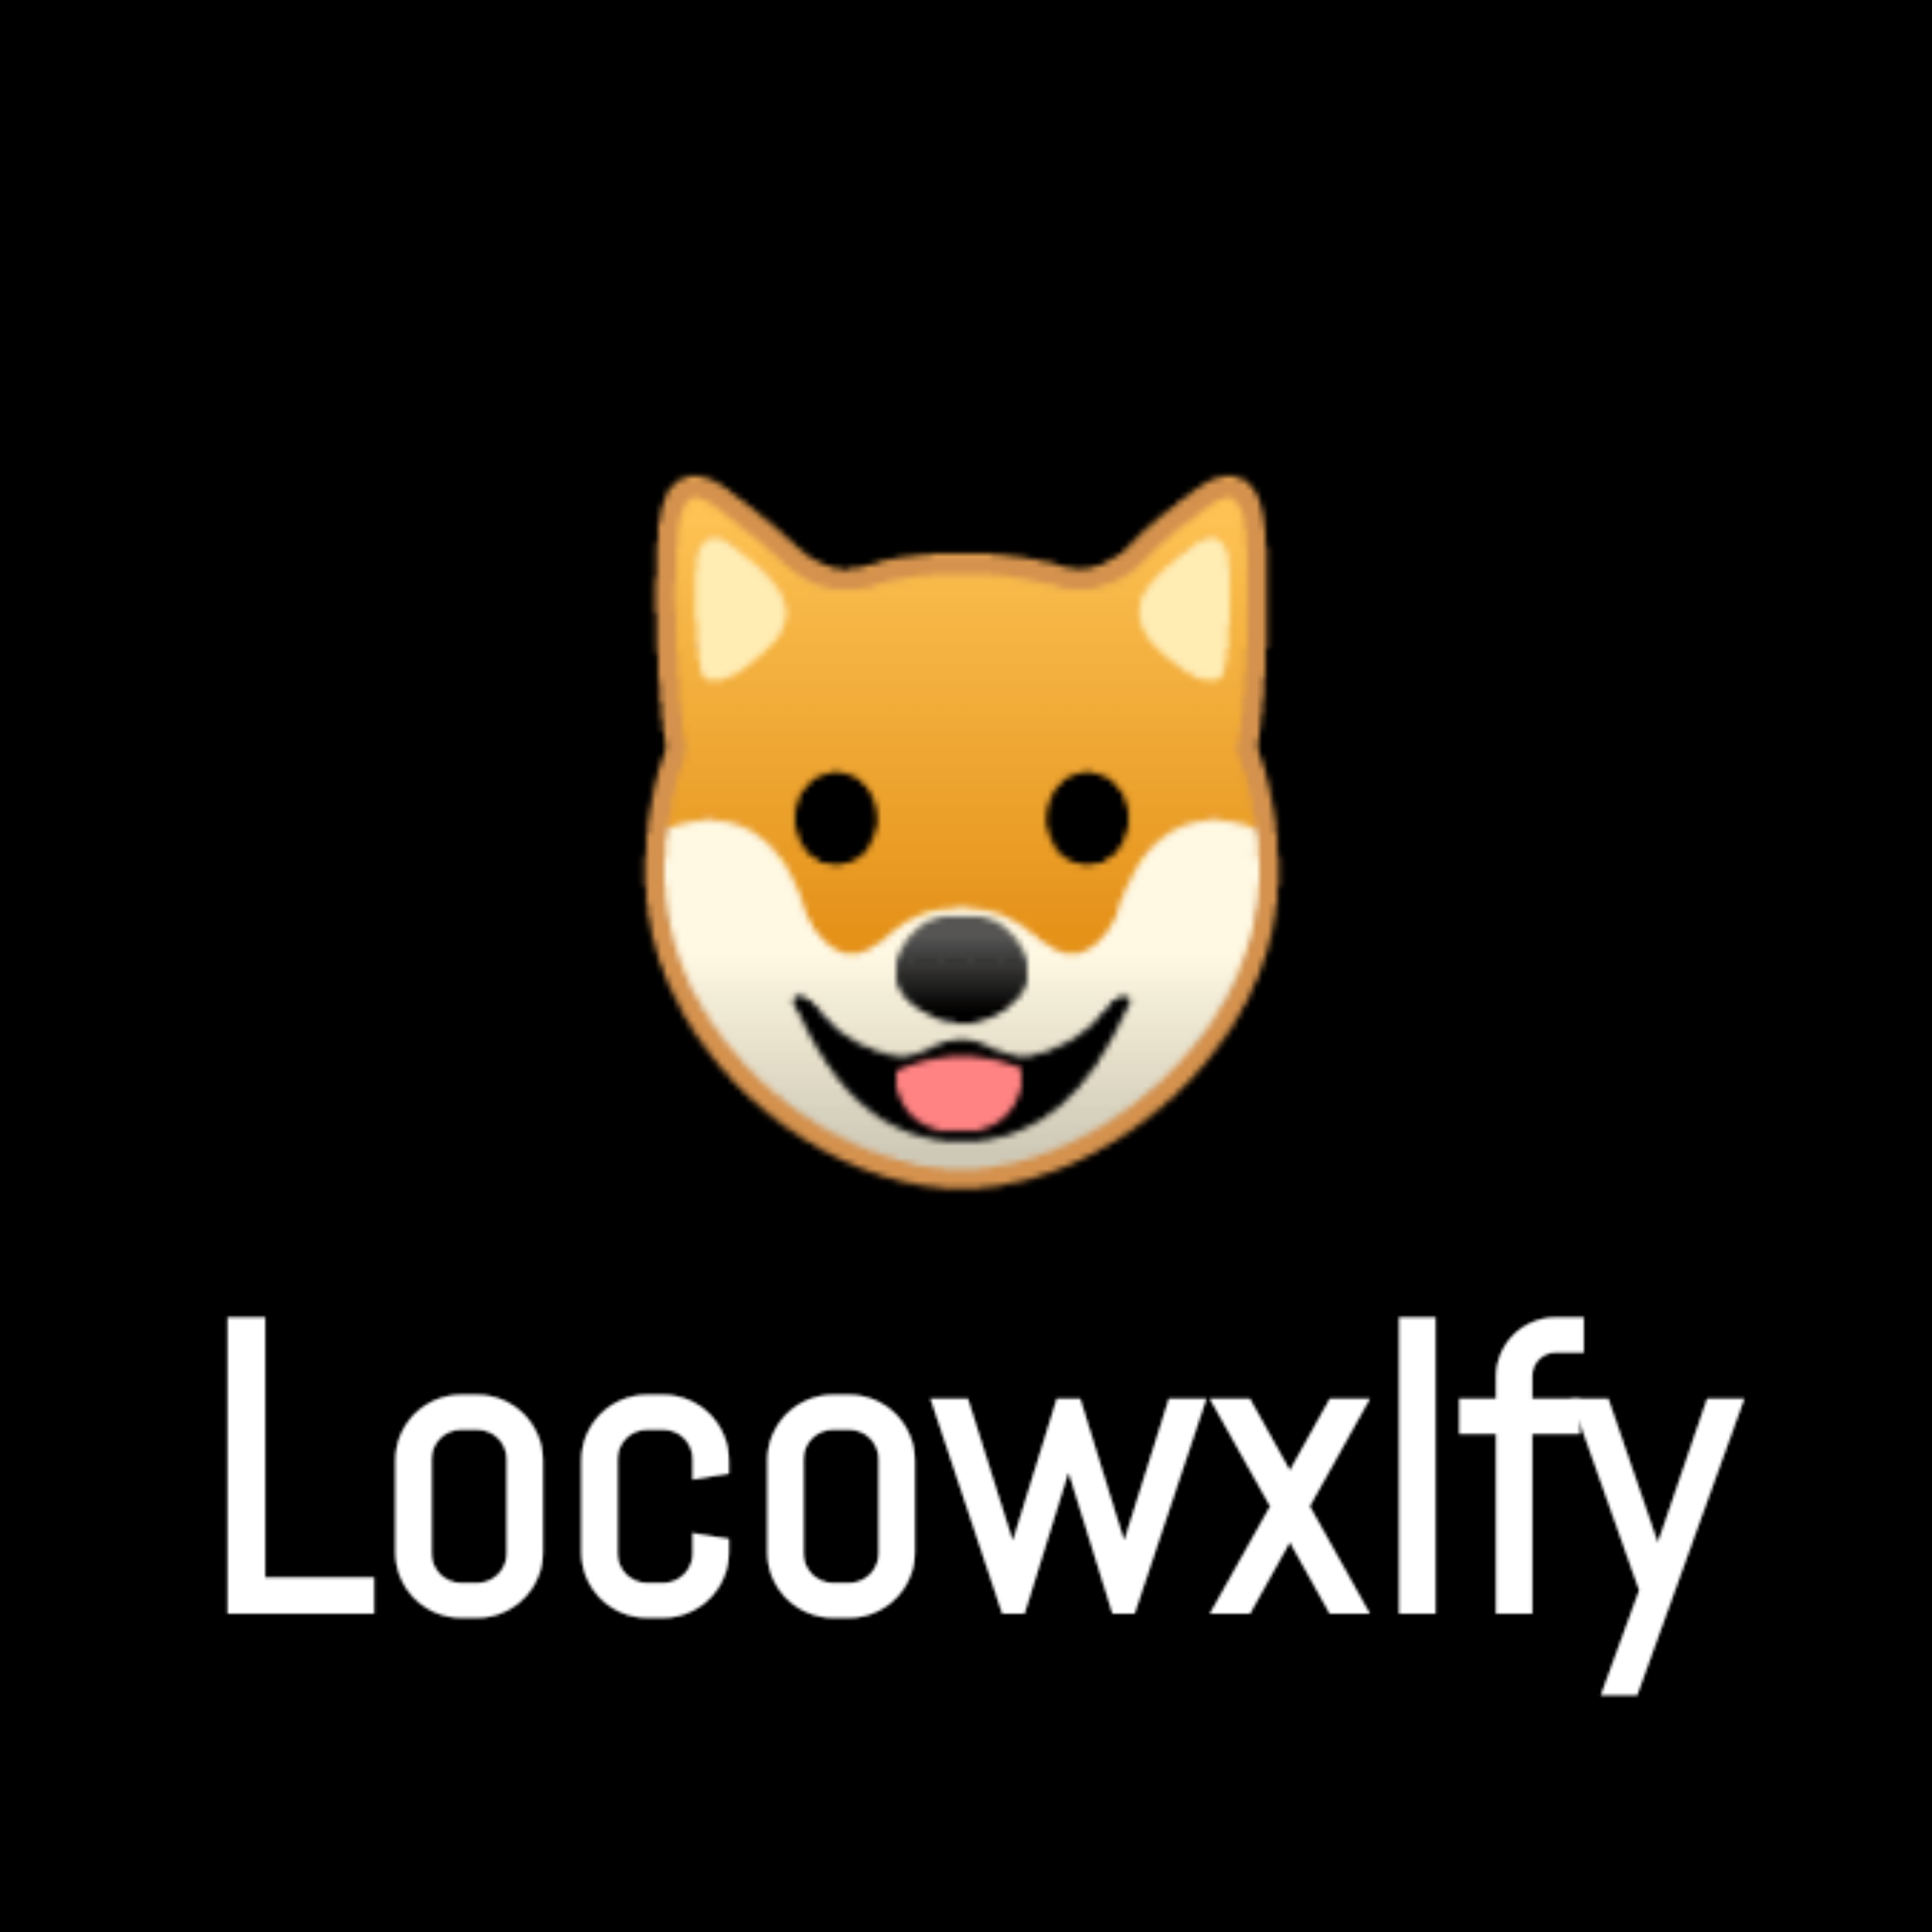 Locowxlfy